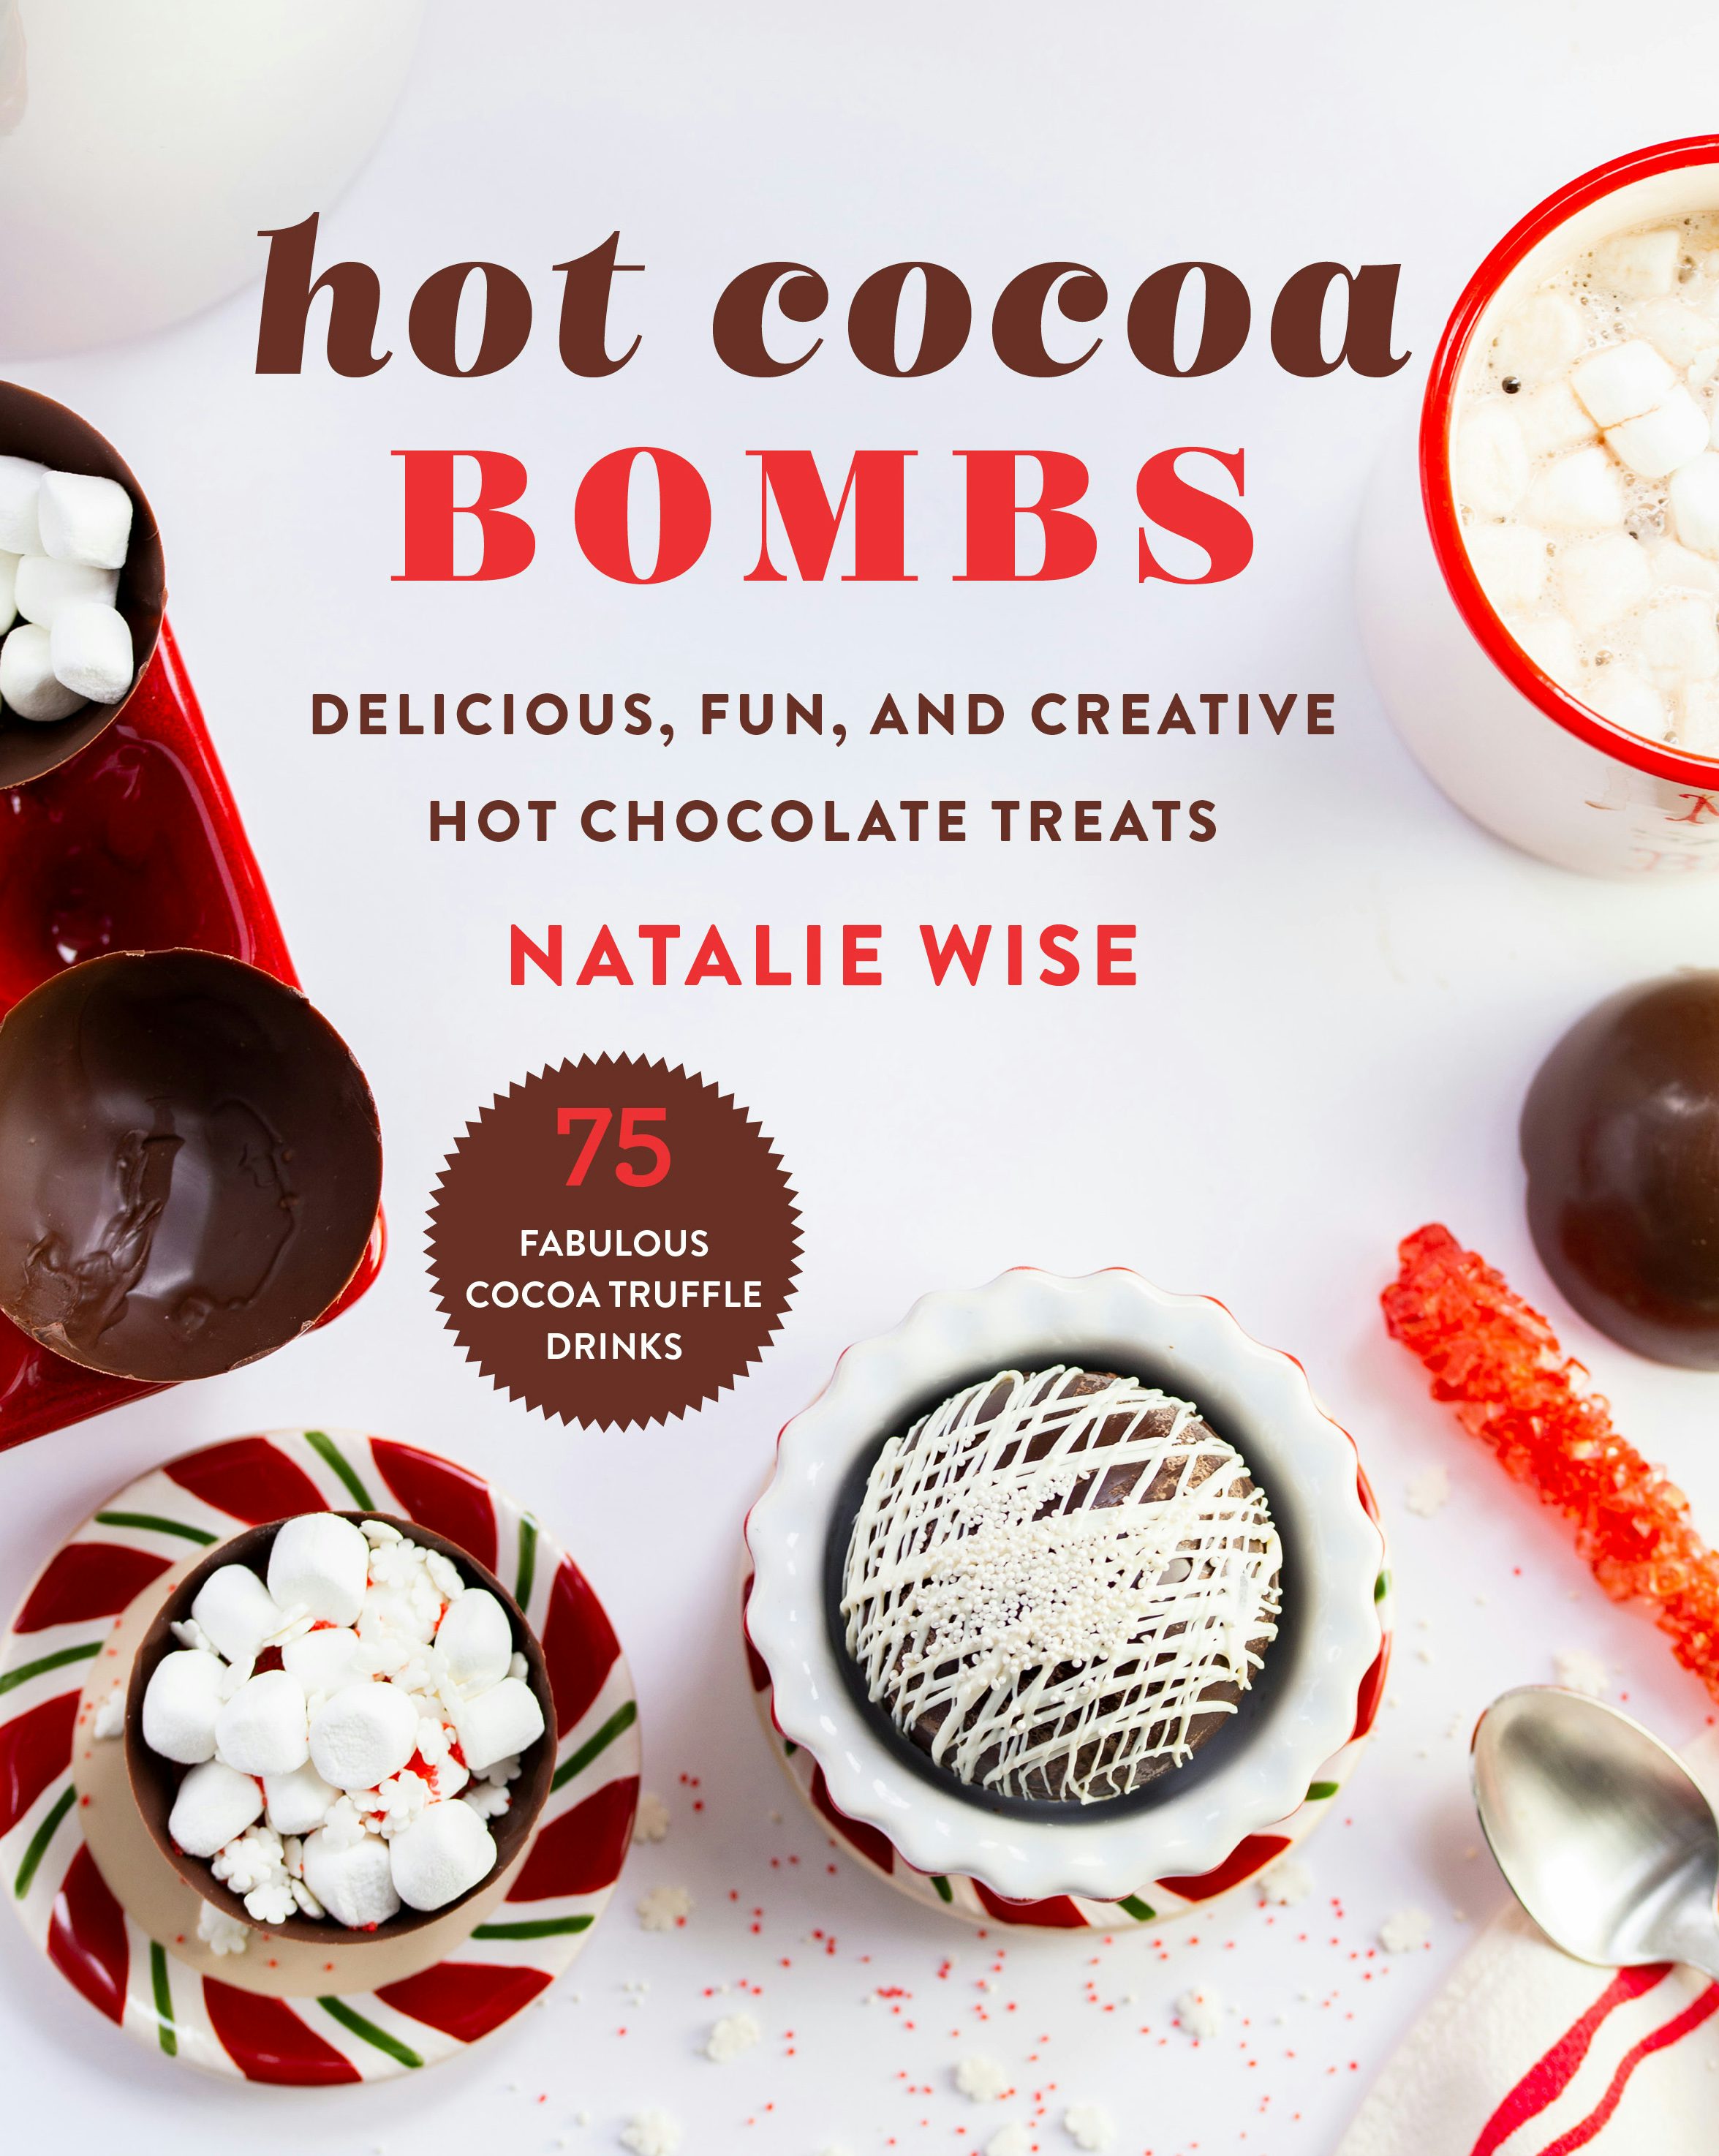 hot cocoa bombs trademark